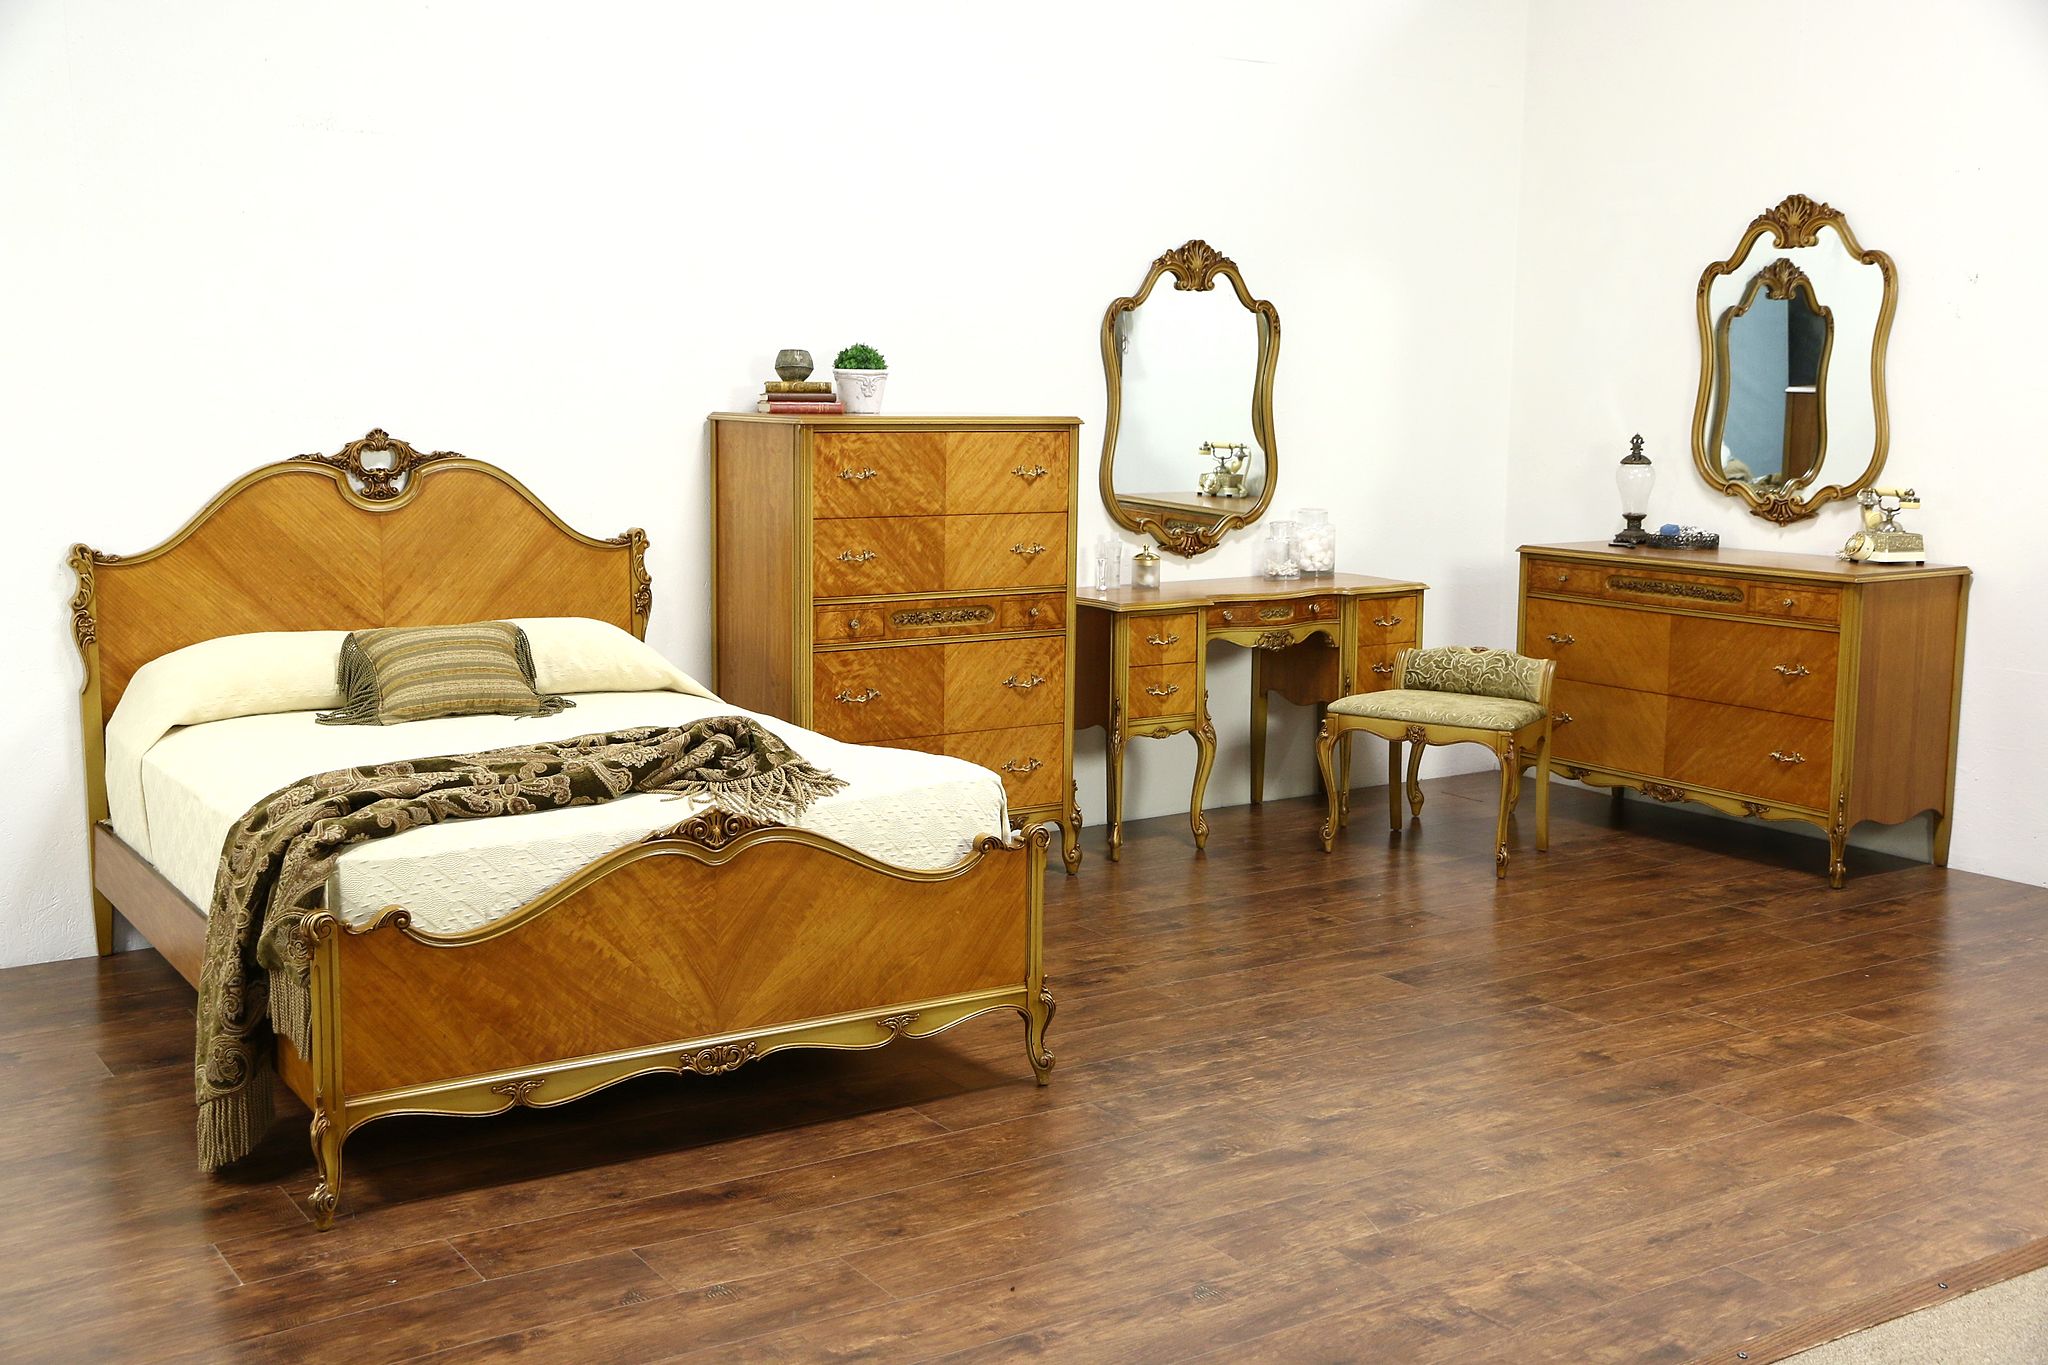 1940s bedroom furniture uk